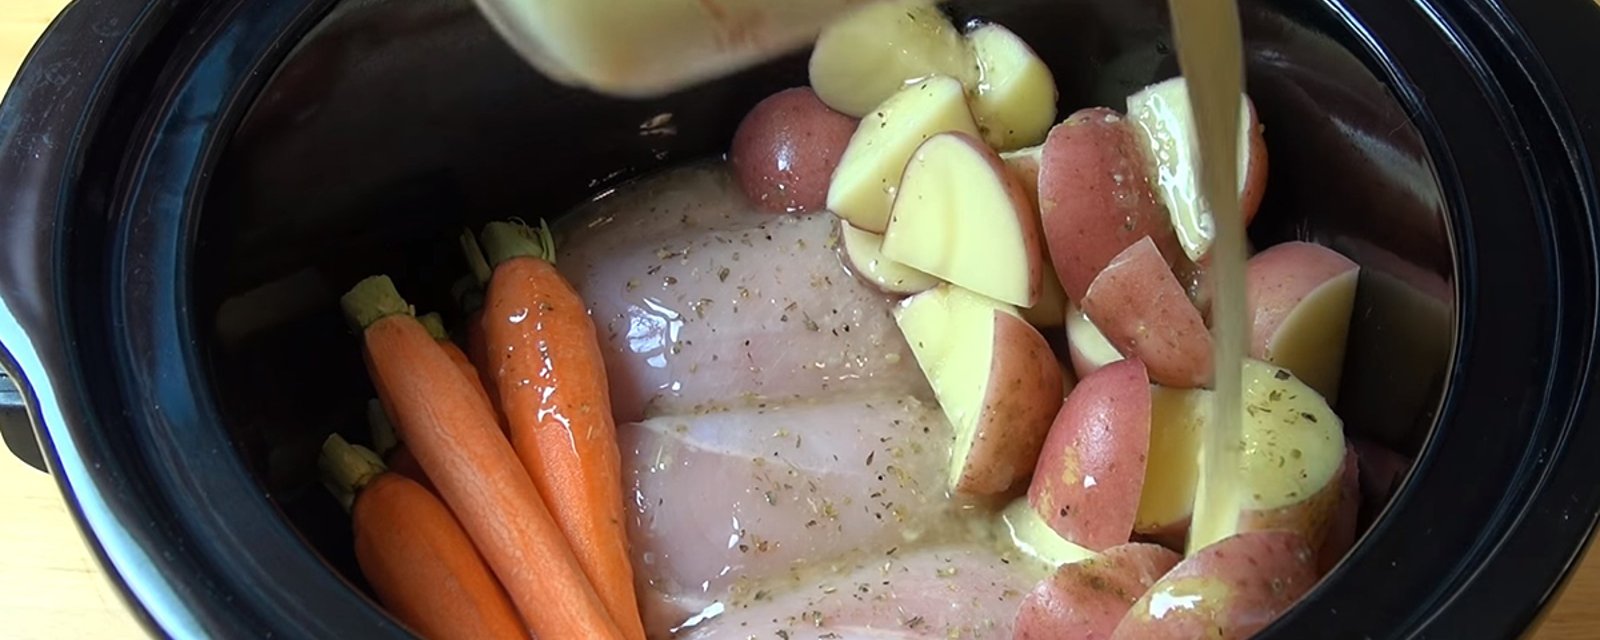 Déposez du poulet, des pommes de terre et des carottes dans votre mijoteuse pour obtenir un repas simple et délicieux